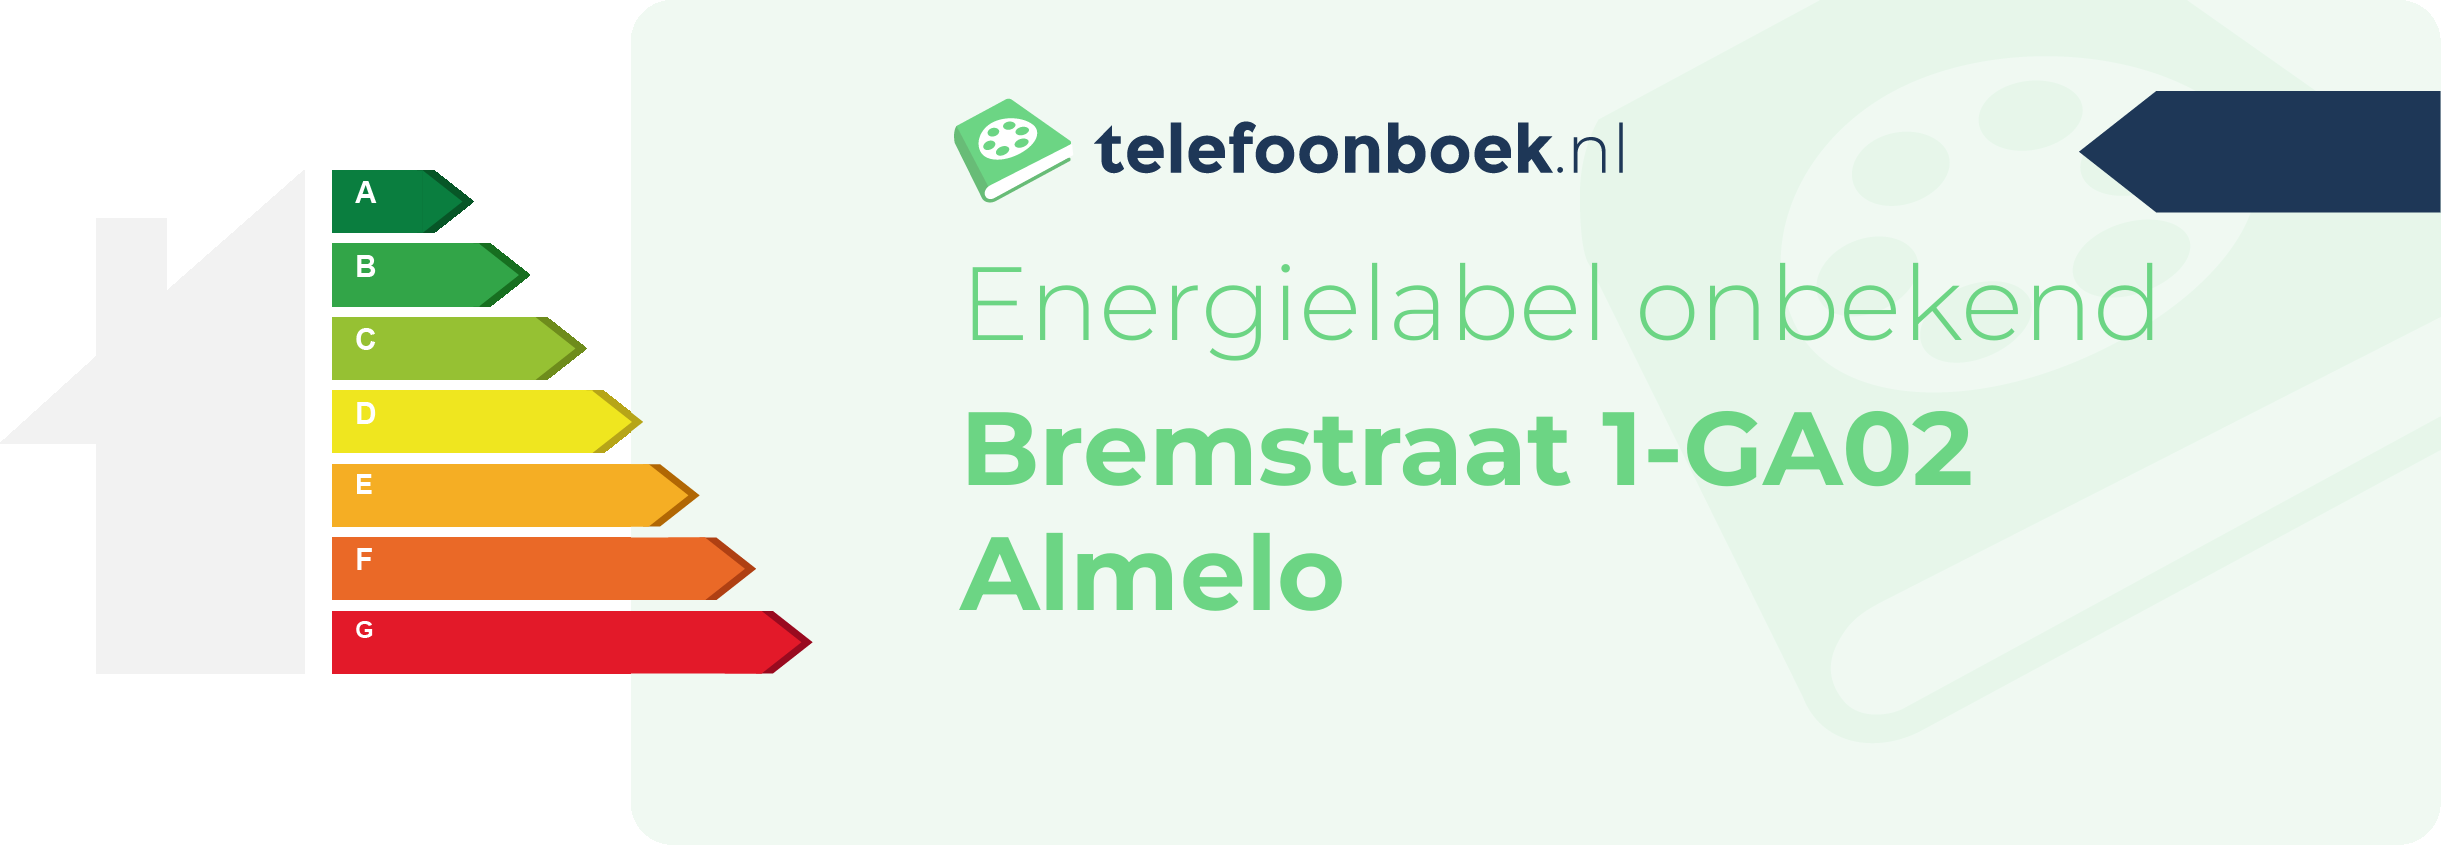 Energielabel Bremstraat 1-GA02 Almelo